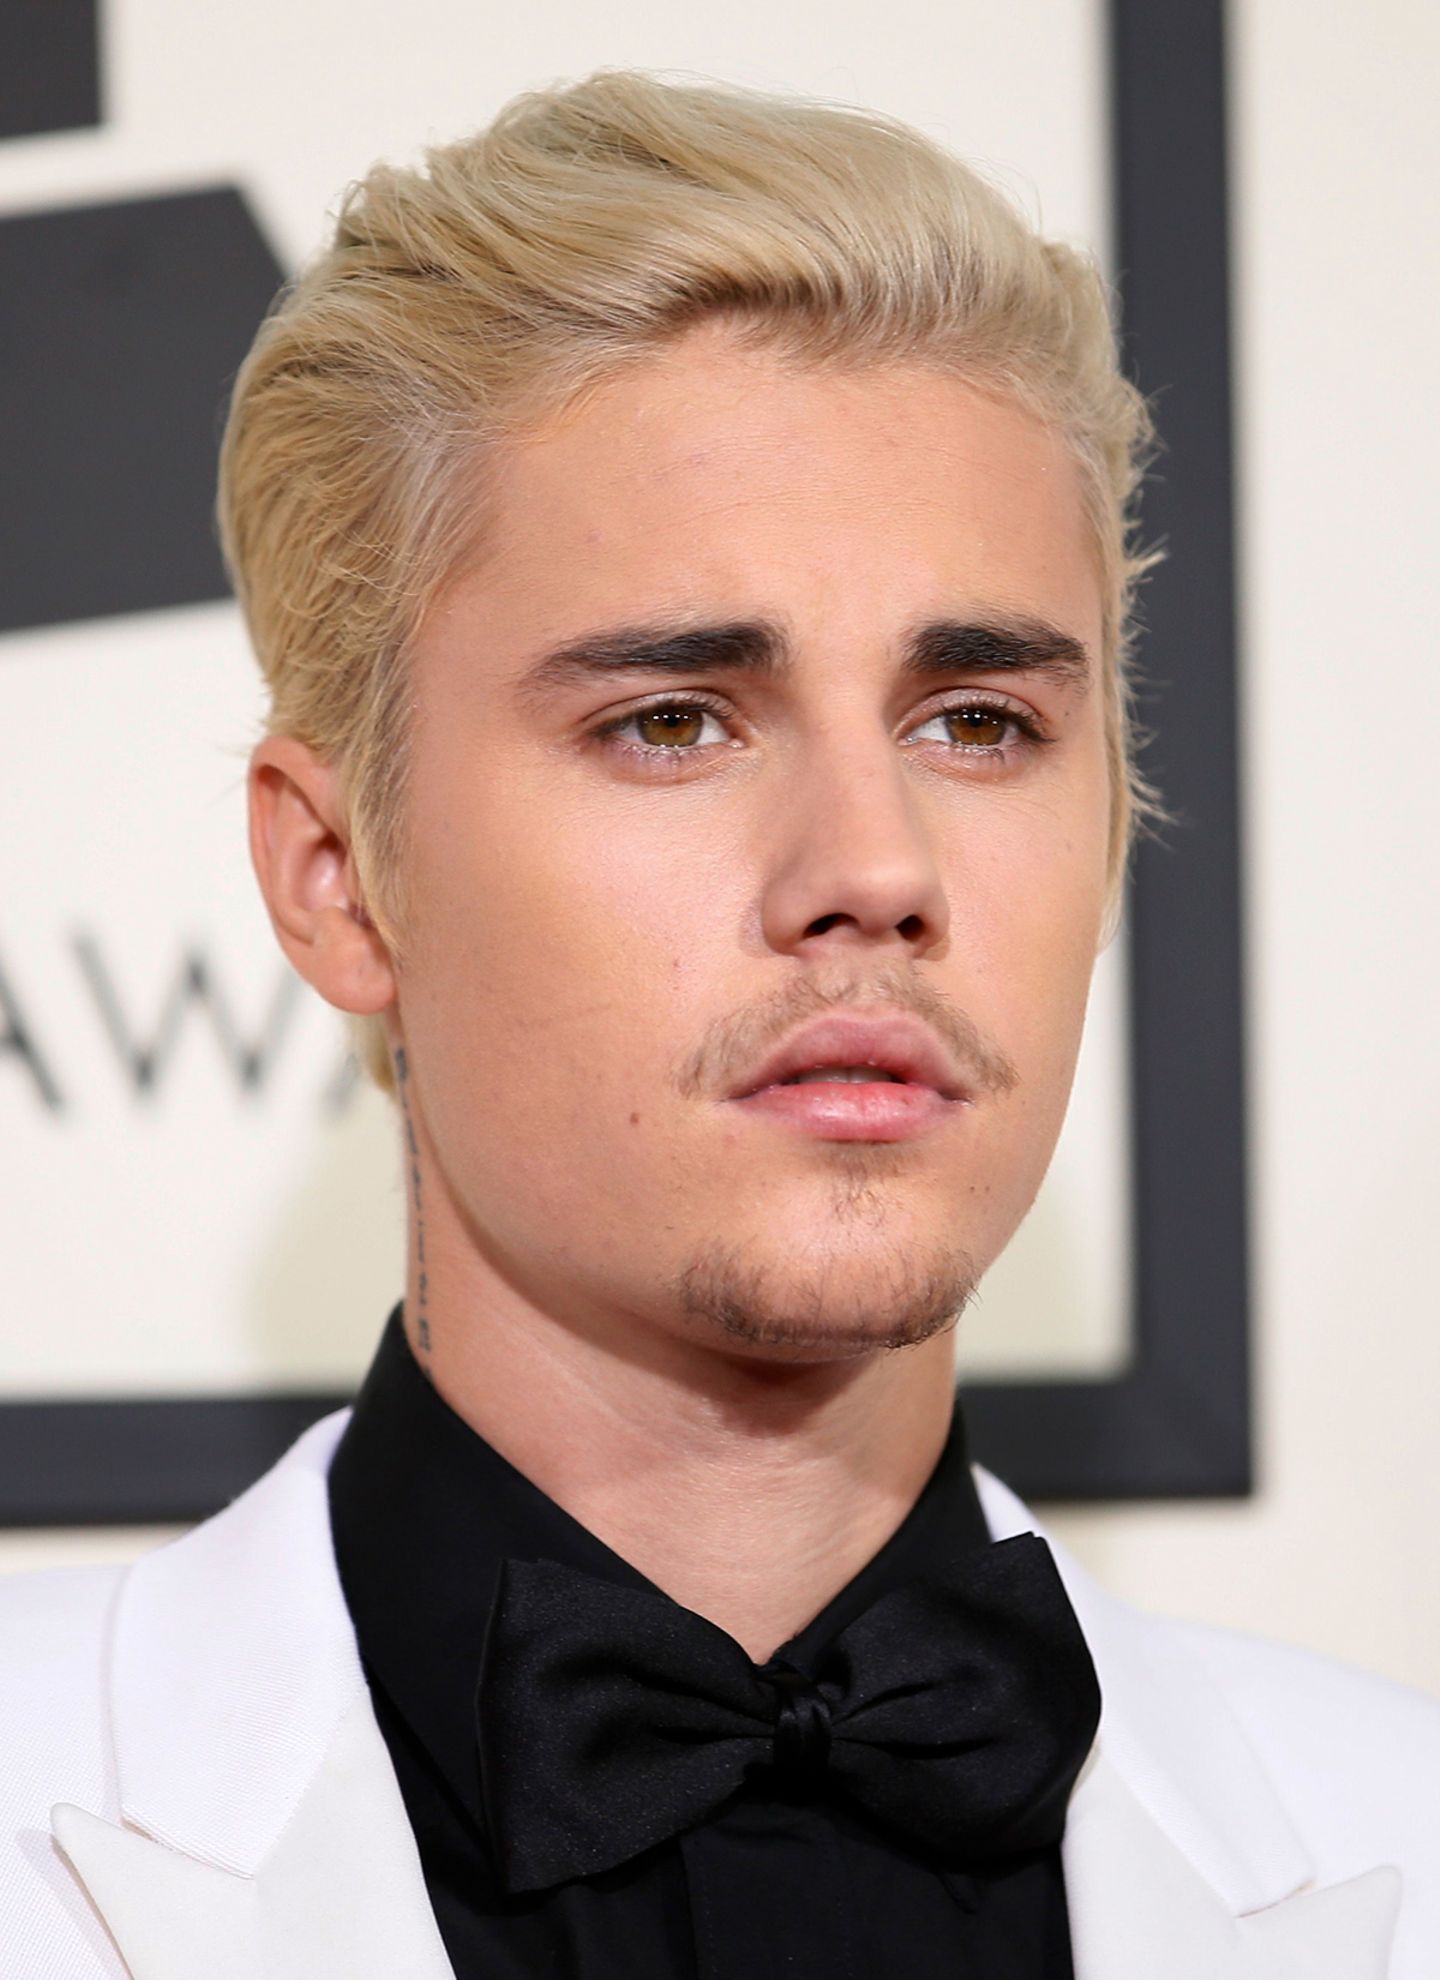 Bei den Grammy Awards im Februar 2016 überraschte Justin Bieber nicht nur mit blondierten Haare, sondern auch mit dem erneut kläglich gescheiterten Versuch, sich einen Bart stehen zu lassen.